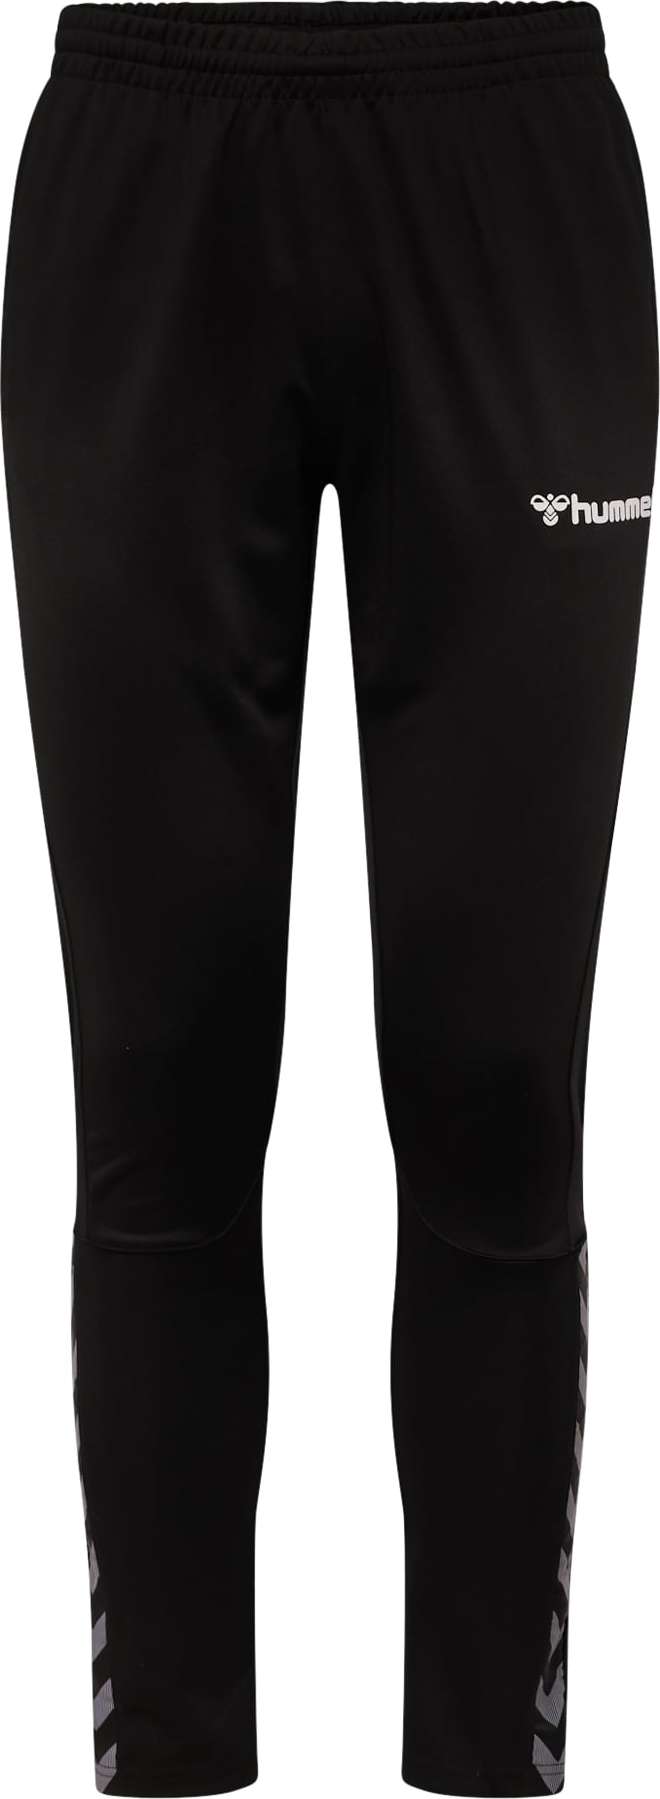 Sportovní kalhoty Hummel šedý melír / černá / bílá